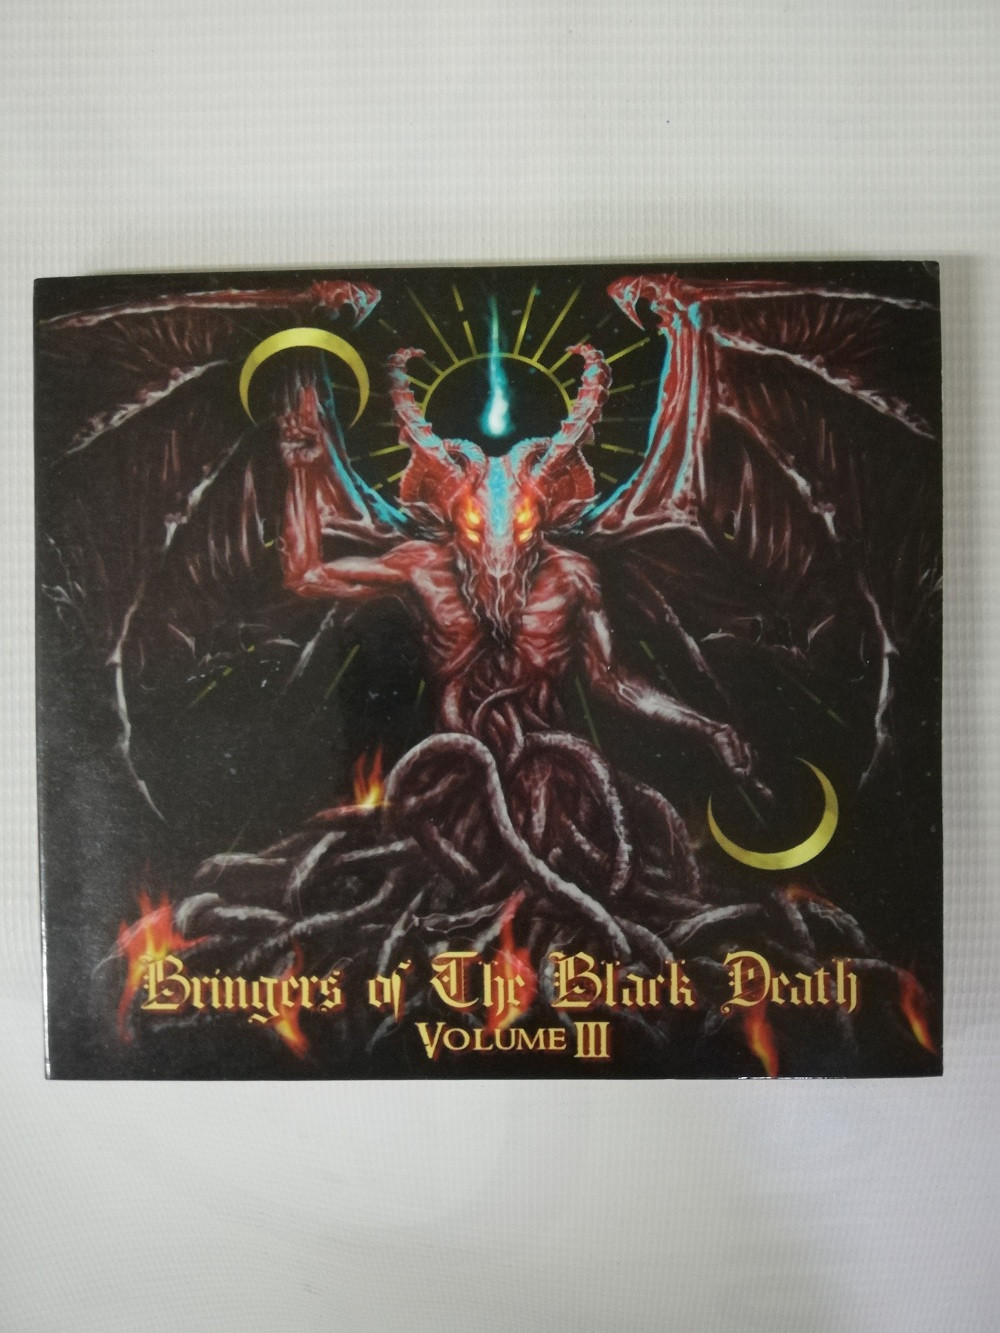 Imagen CD BRINGERS OF THE BLACK DEATH - BRINGERS OF THE BLACK DEATH VOL. III